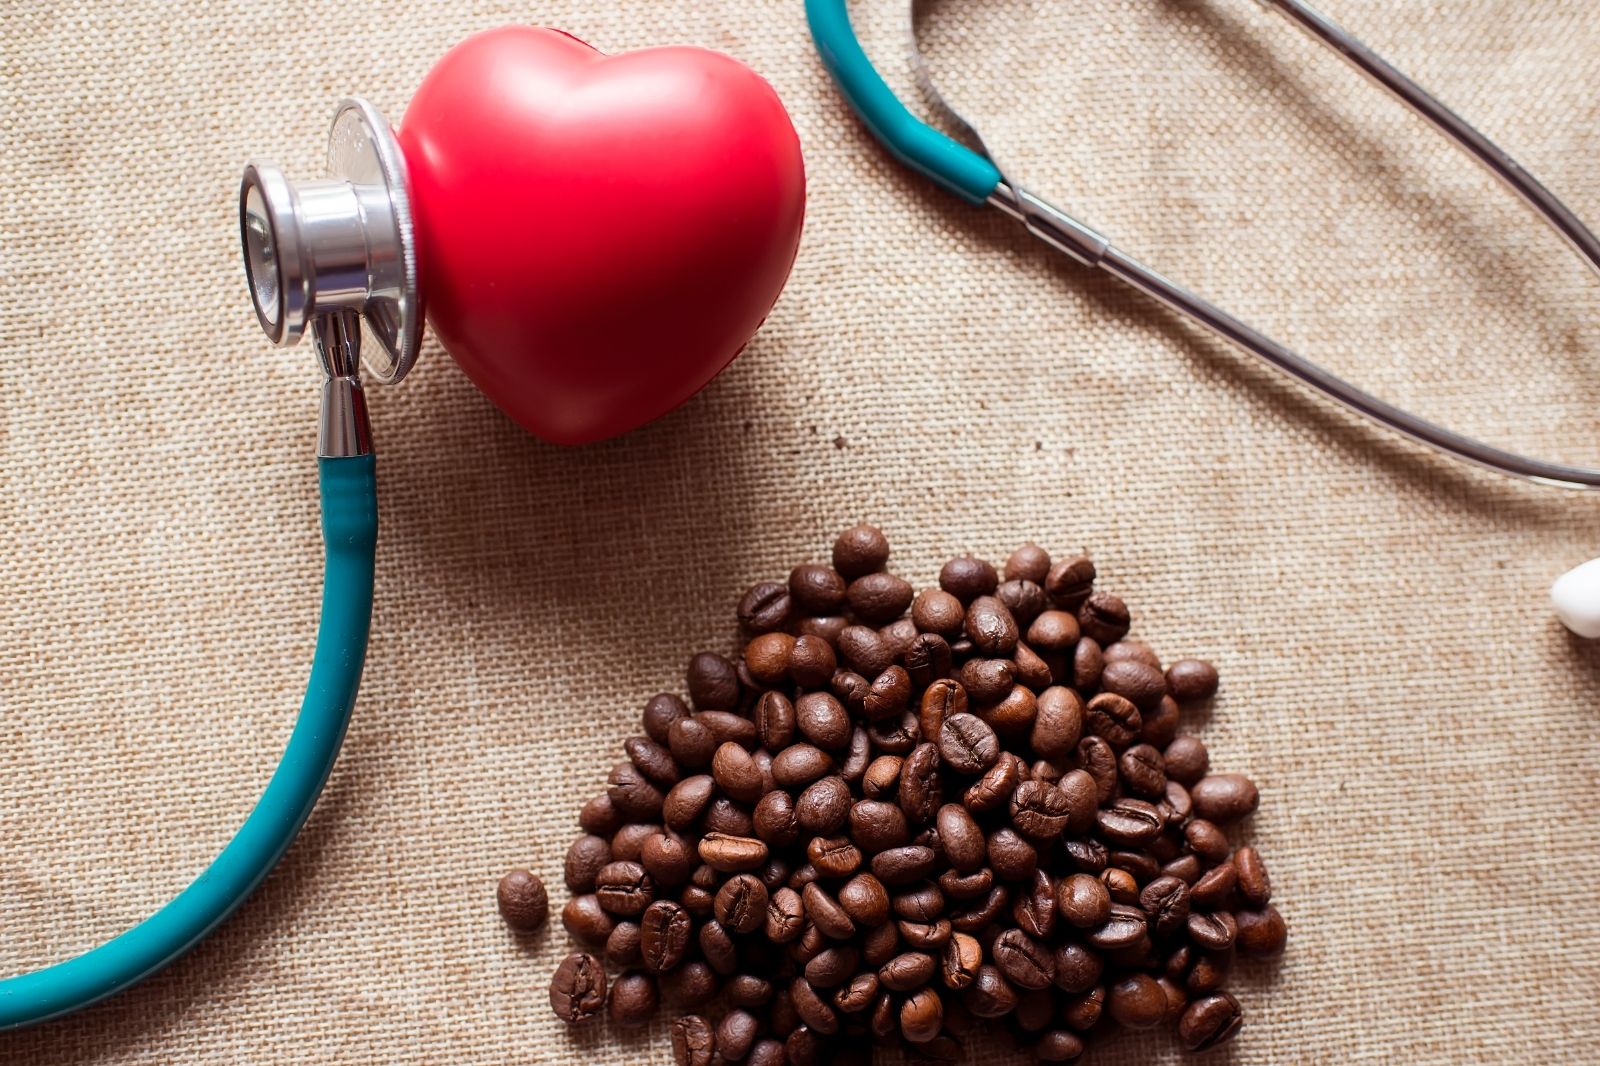 Entkoffeinierter Kaffee zusammen mit Arztequipment. Entkoffeinierter Kaffee ist gesund.